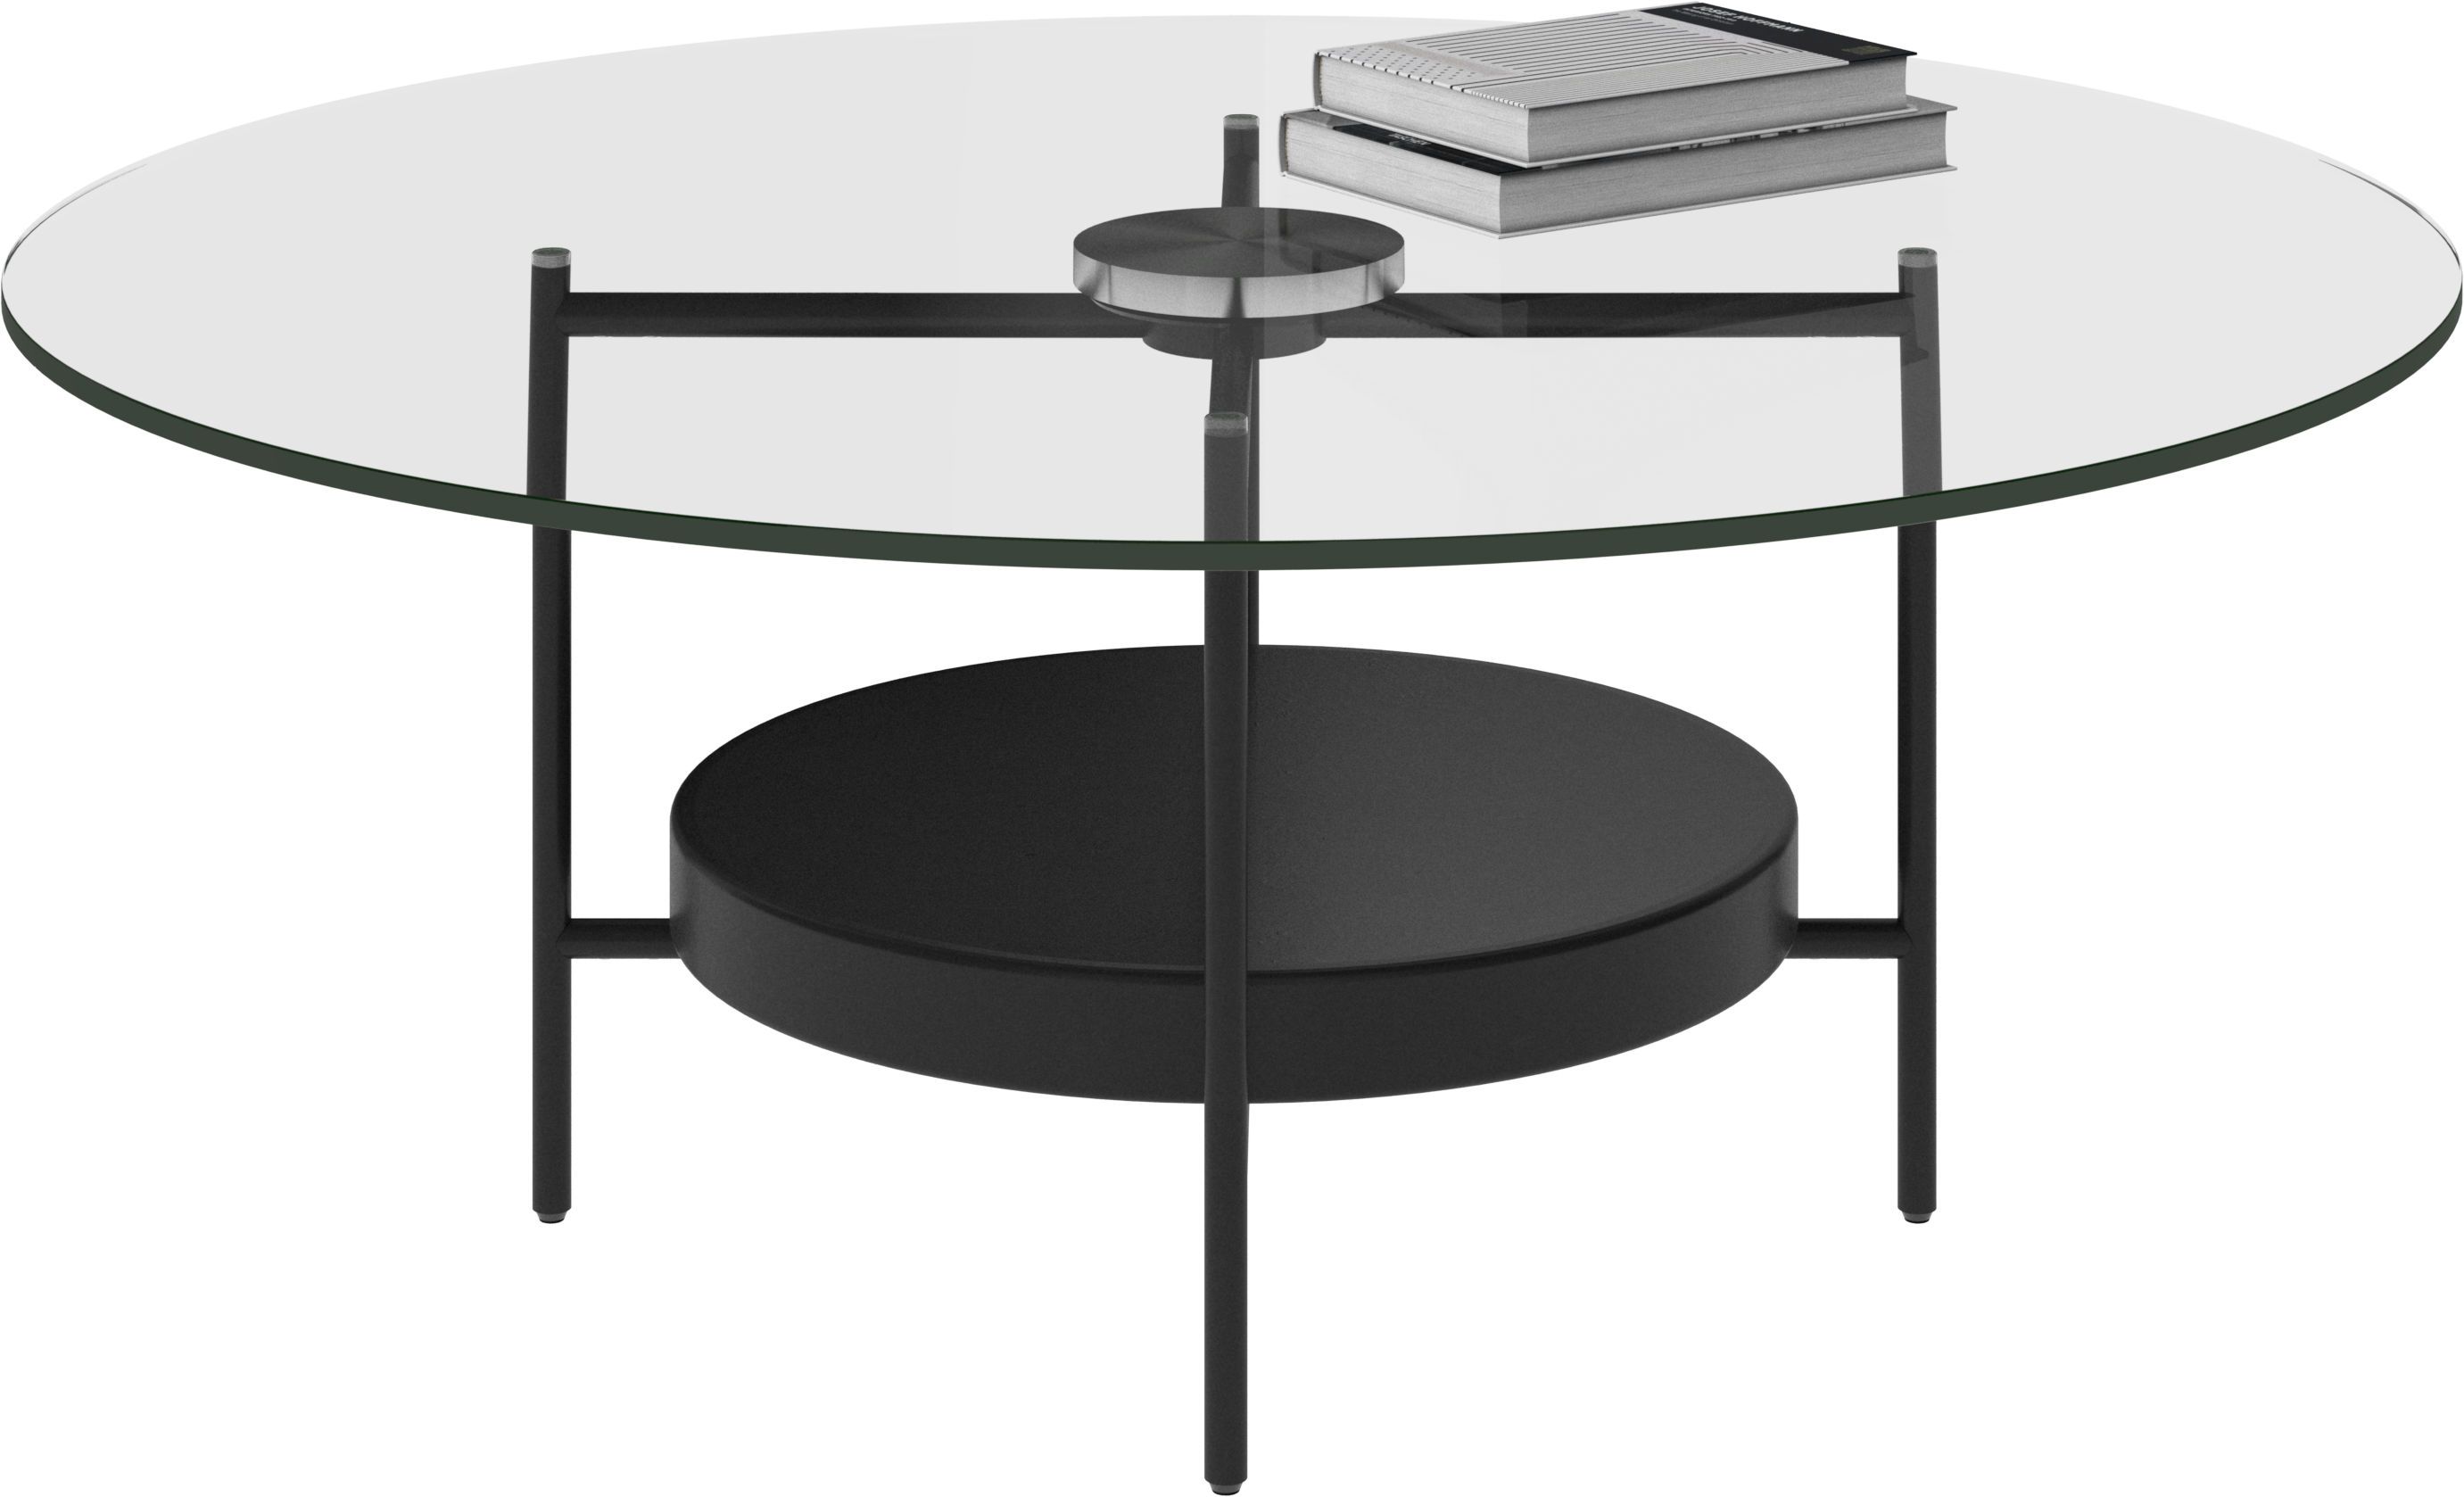 展示特価BoConcept Alba サイドテーブル ガラストップ モダンデザイン ダイニングテーブル